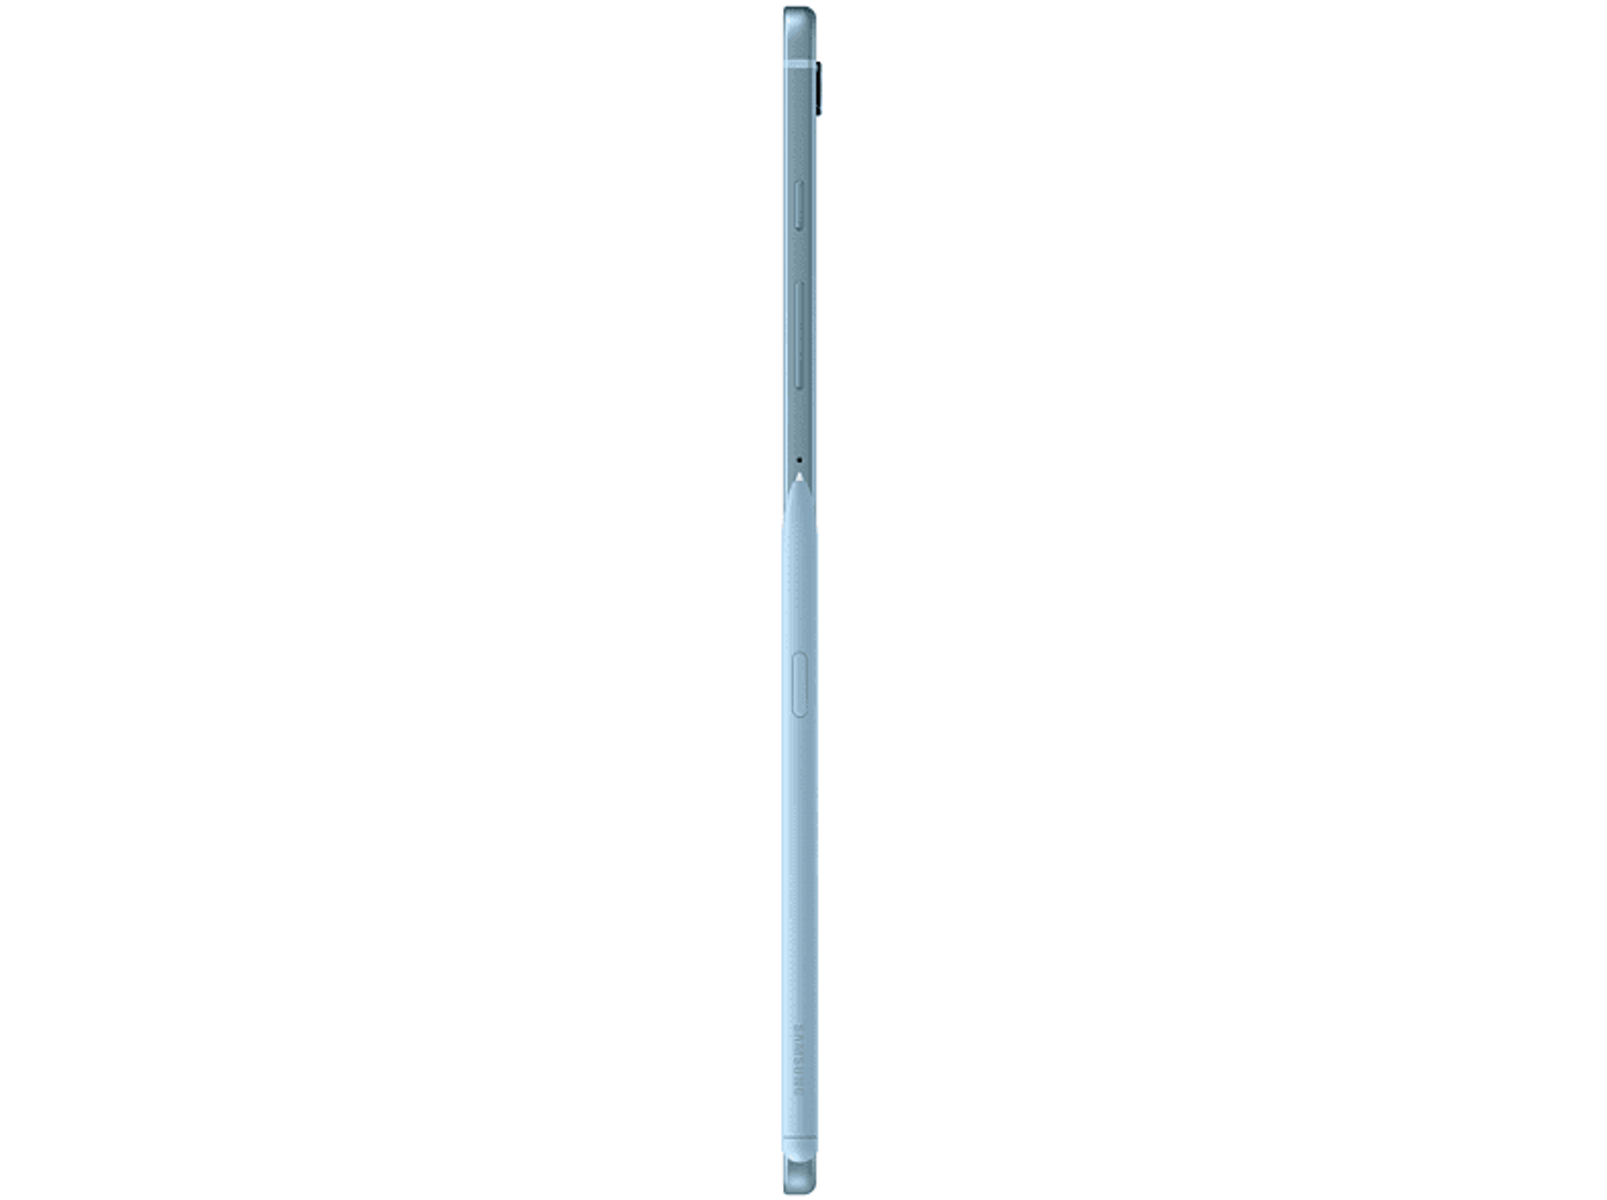 SAMSUNG 2022, Tablet, Tab Zoll, Blau Galaxy 128 Lite GB, 10,4 S6